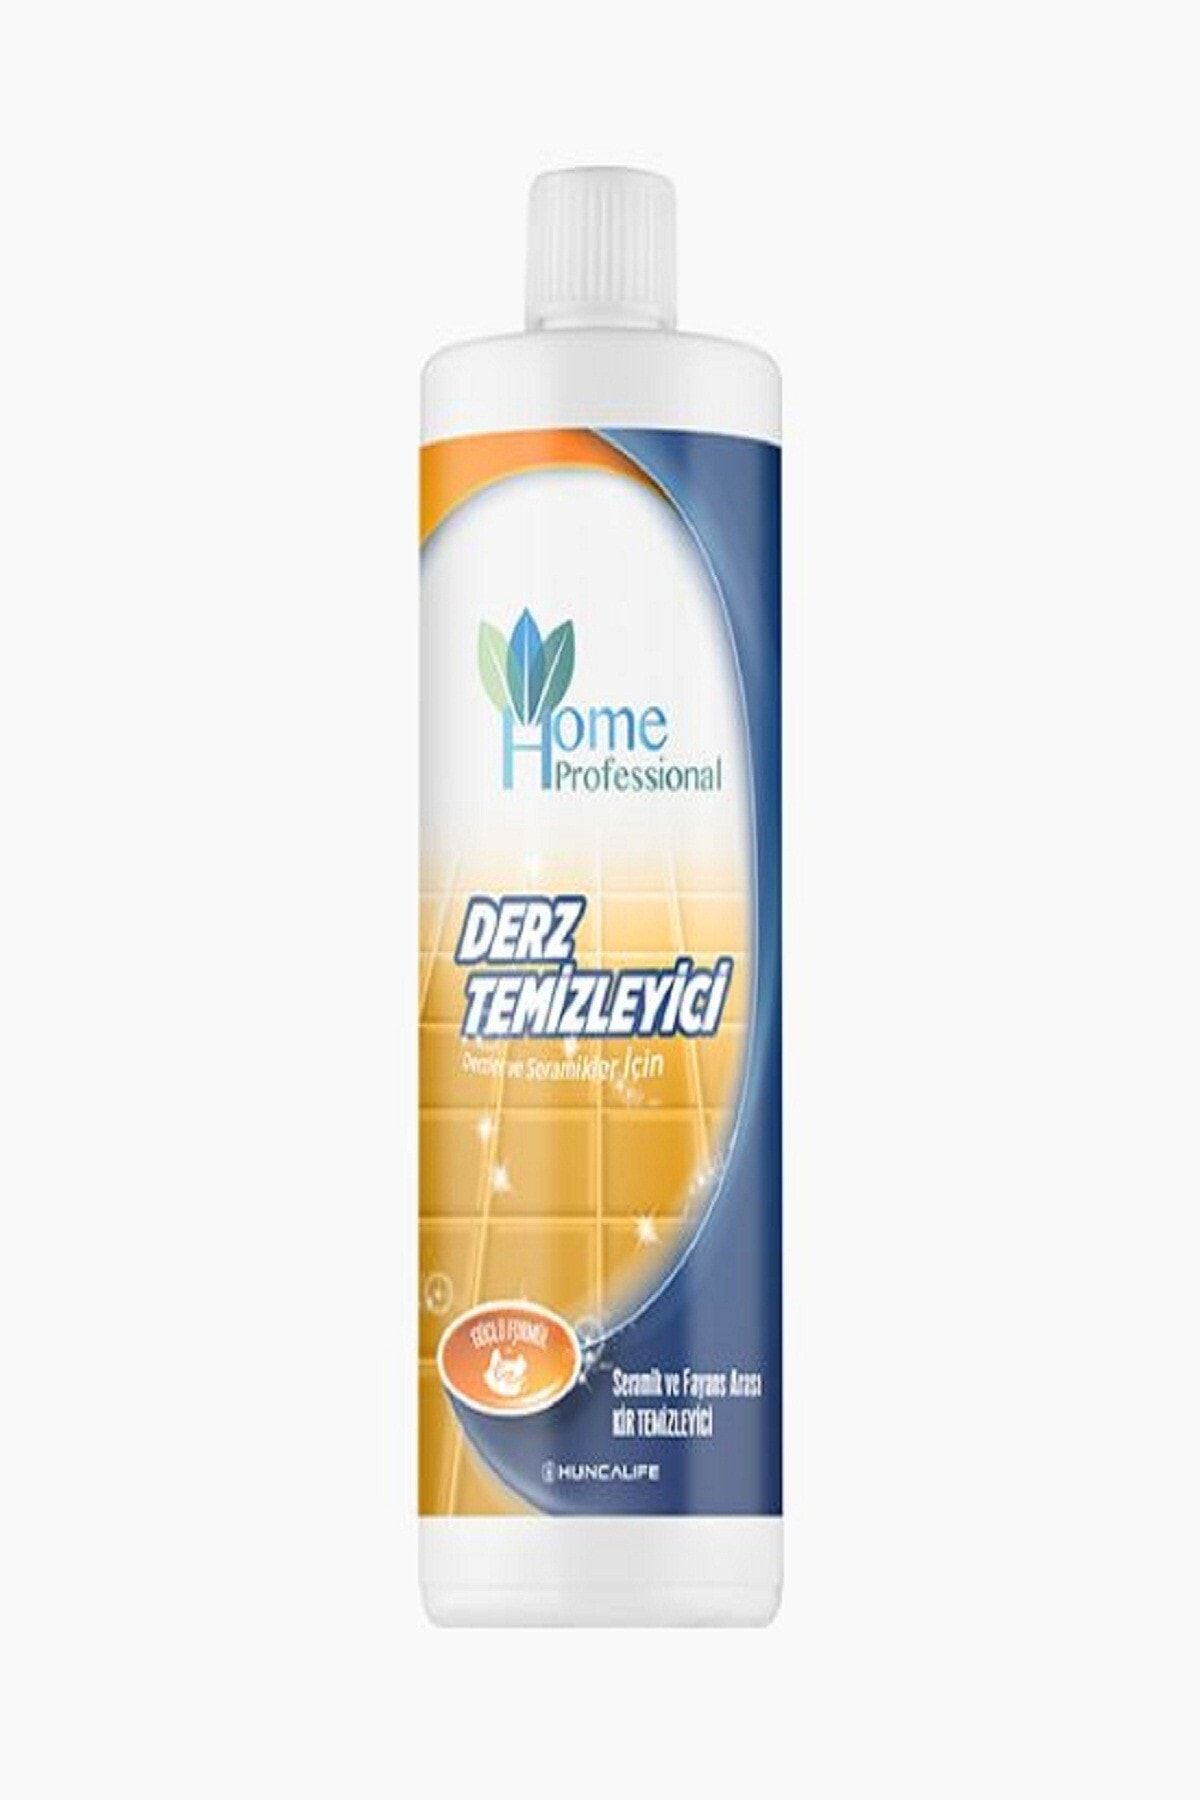 Huncalife Home Professional Derz Temizleyici 750 ml